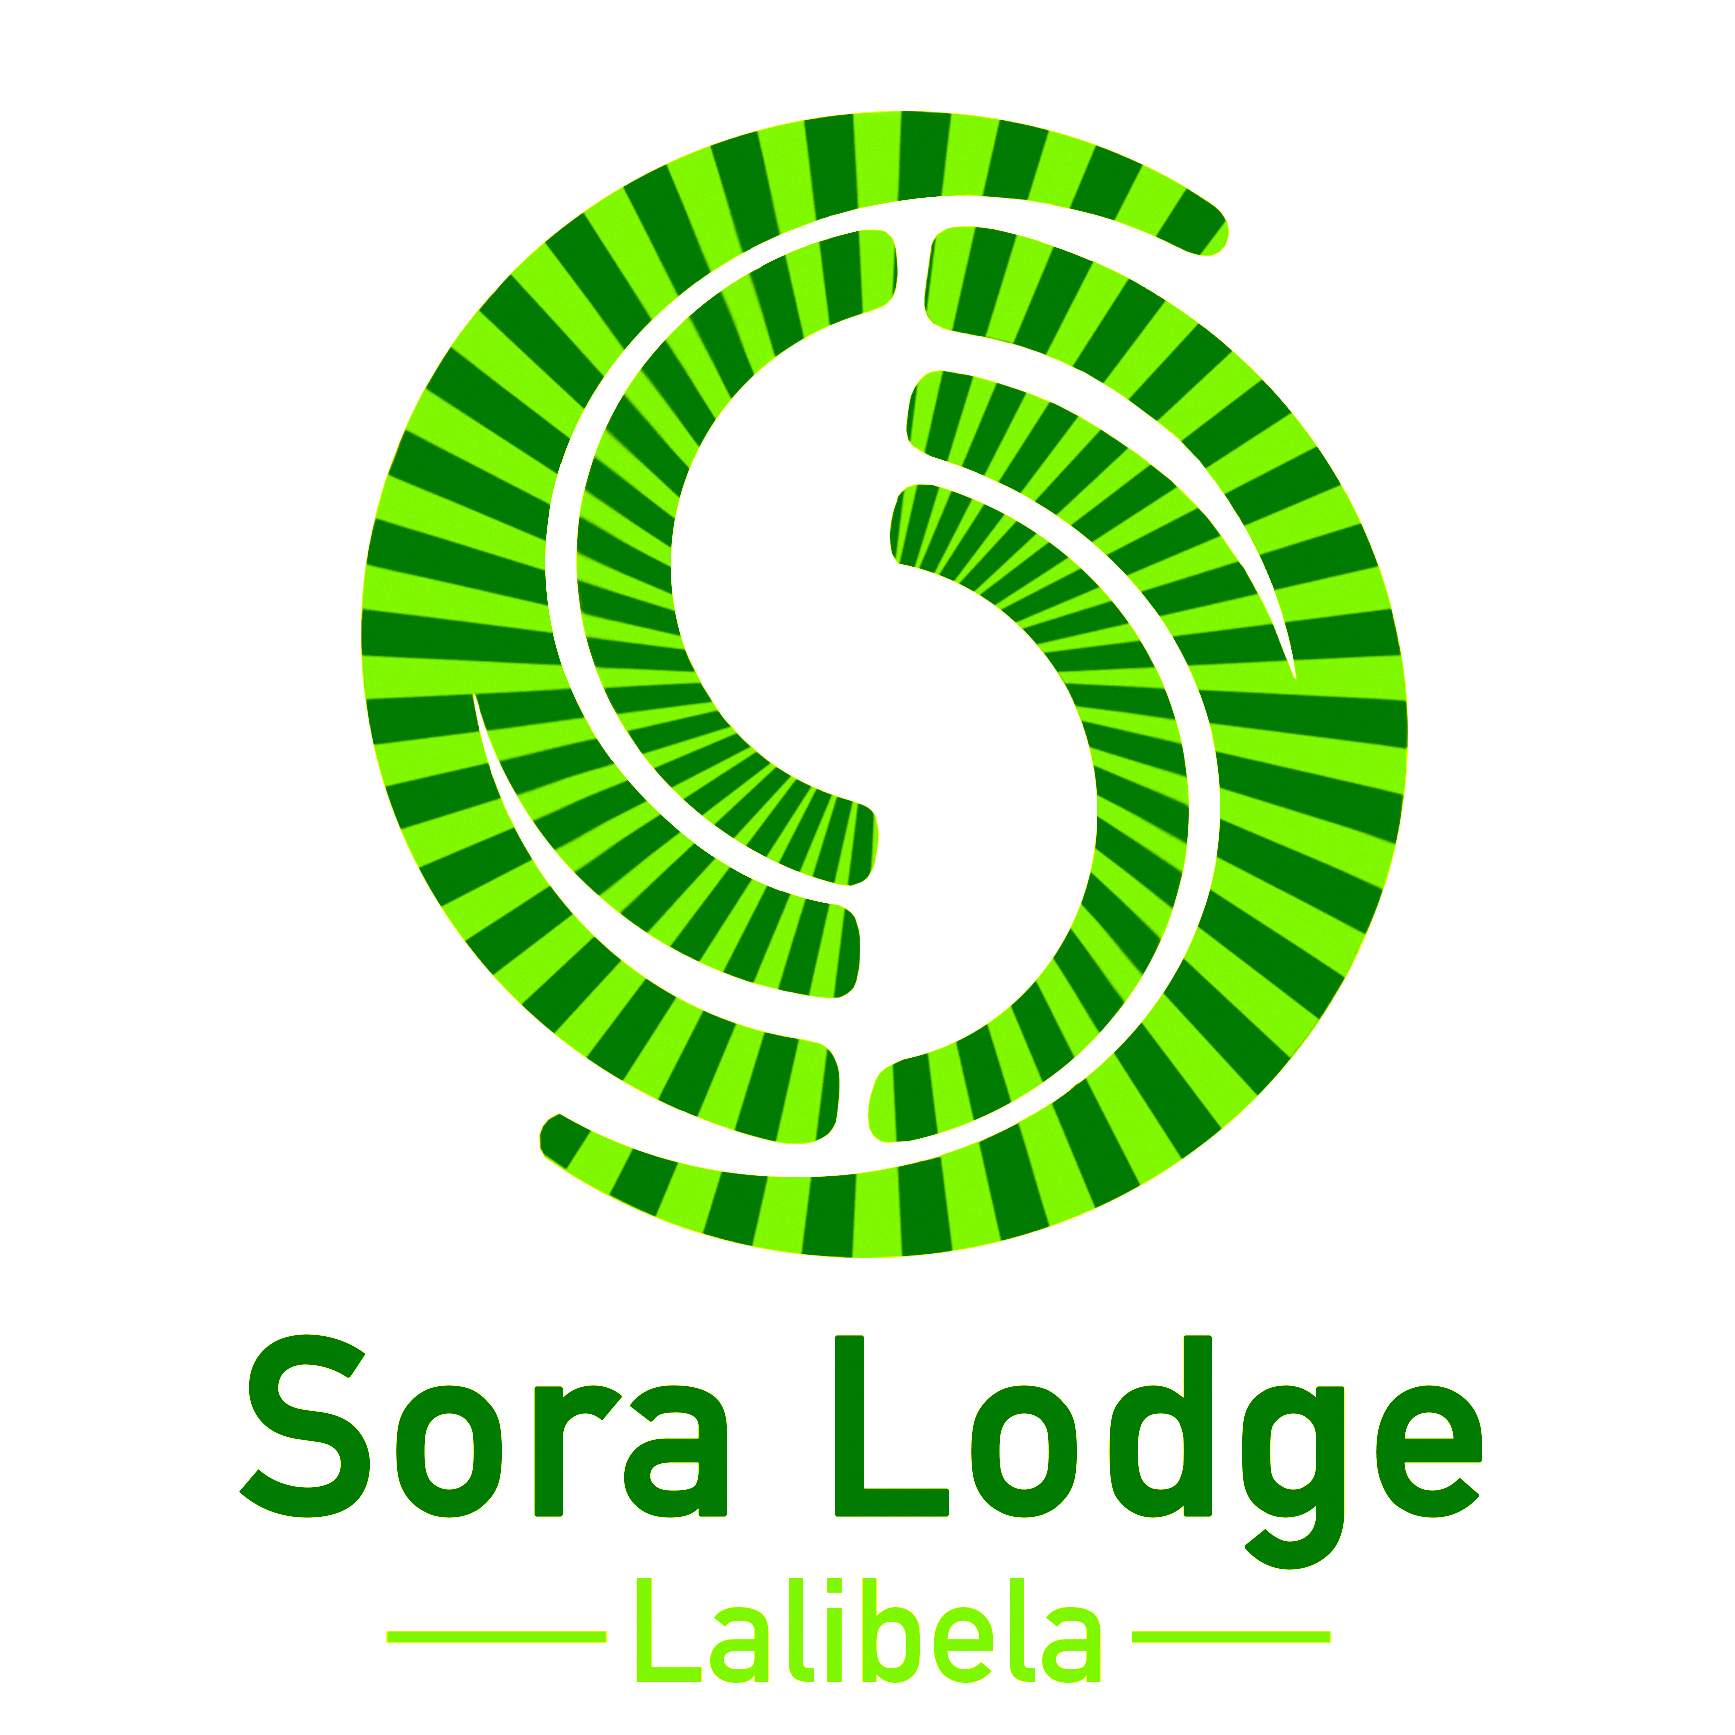 Sora Lodge Lalibela